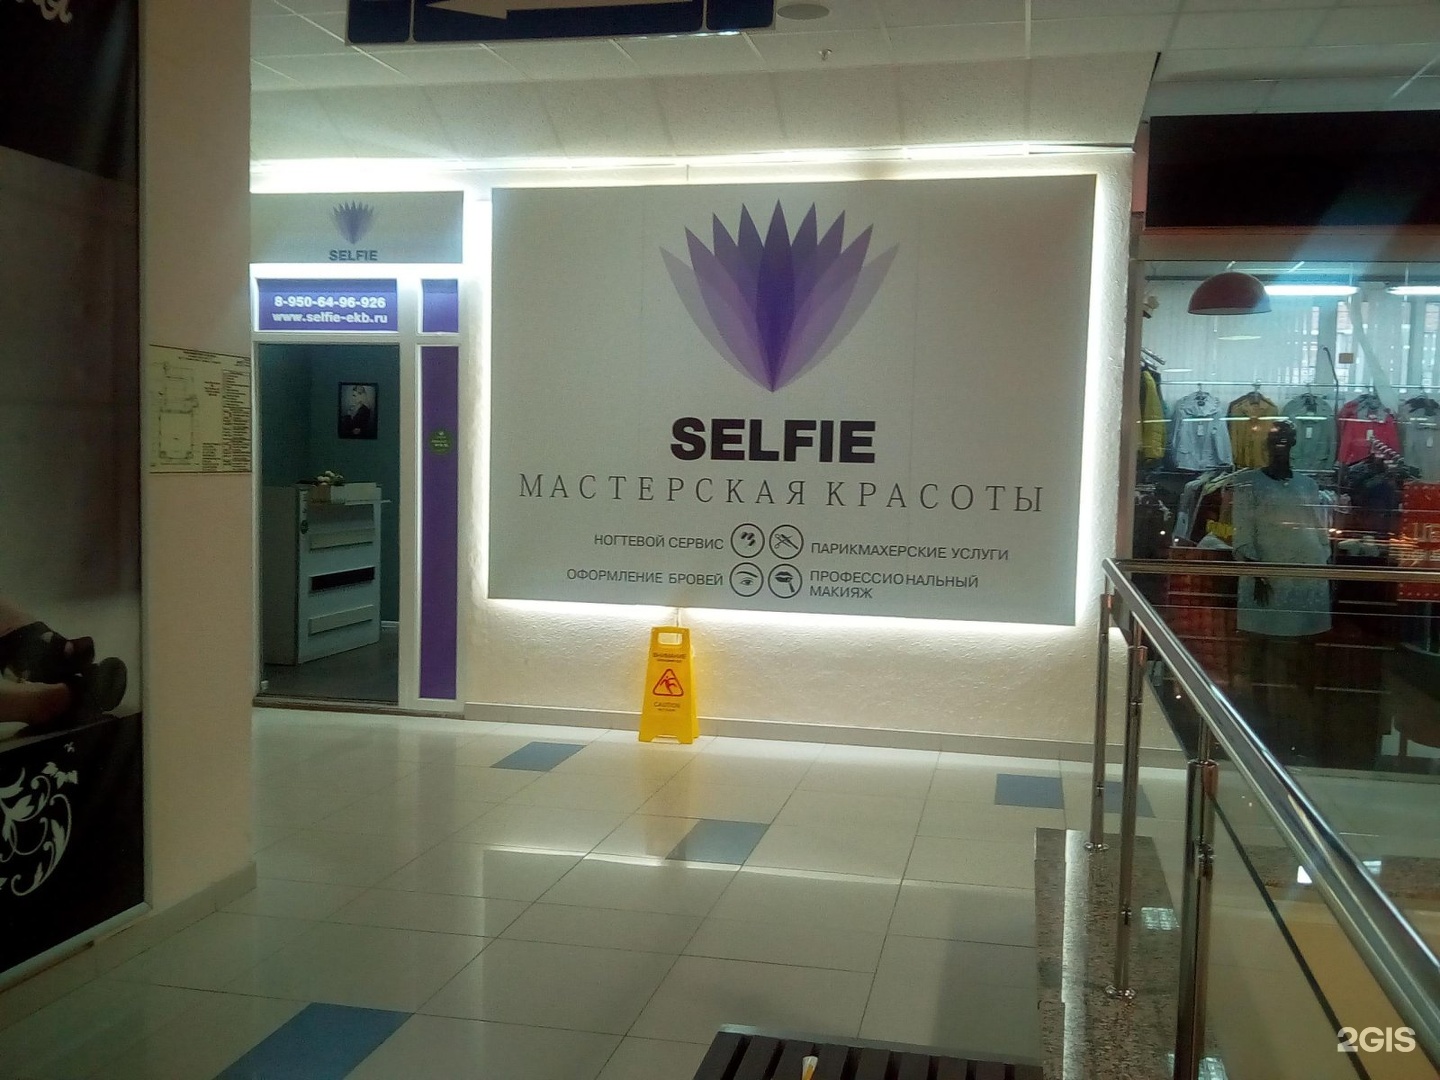 Салон selfie. Салон селфи. Селфи в салоне красоты. Selfie салон красоты. Салон красоты селфи Саранск.